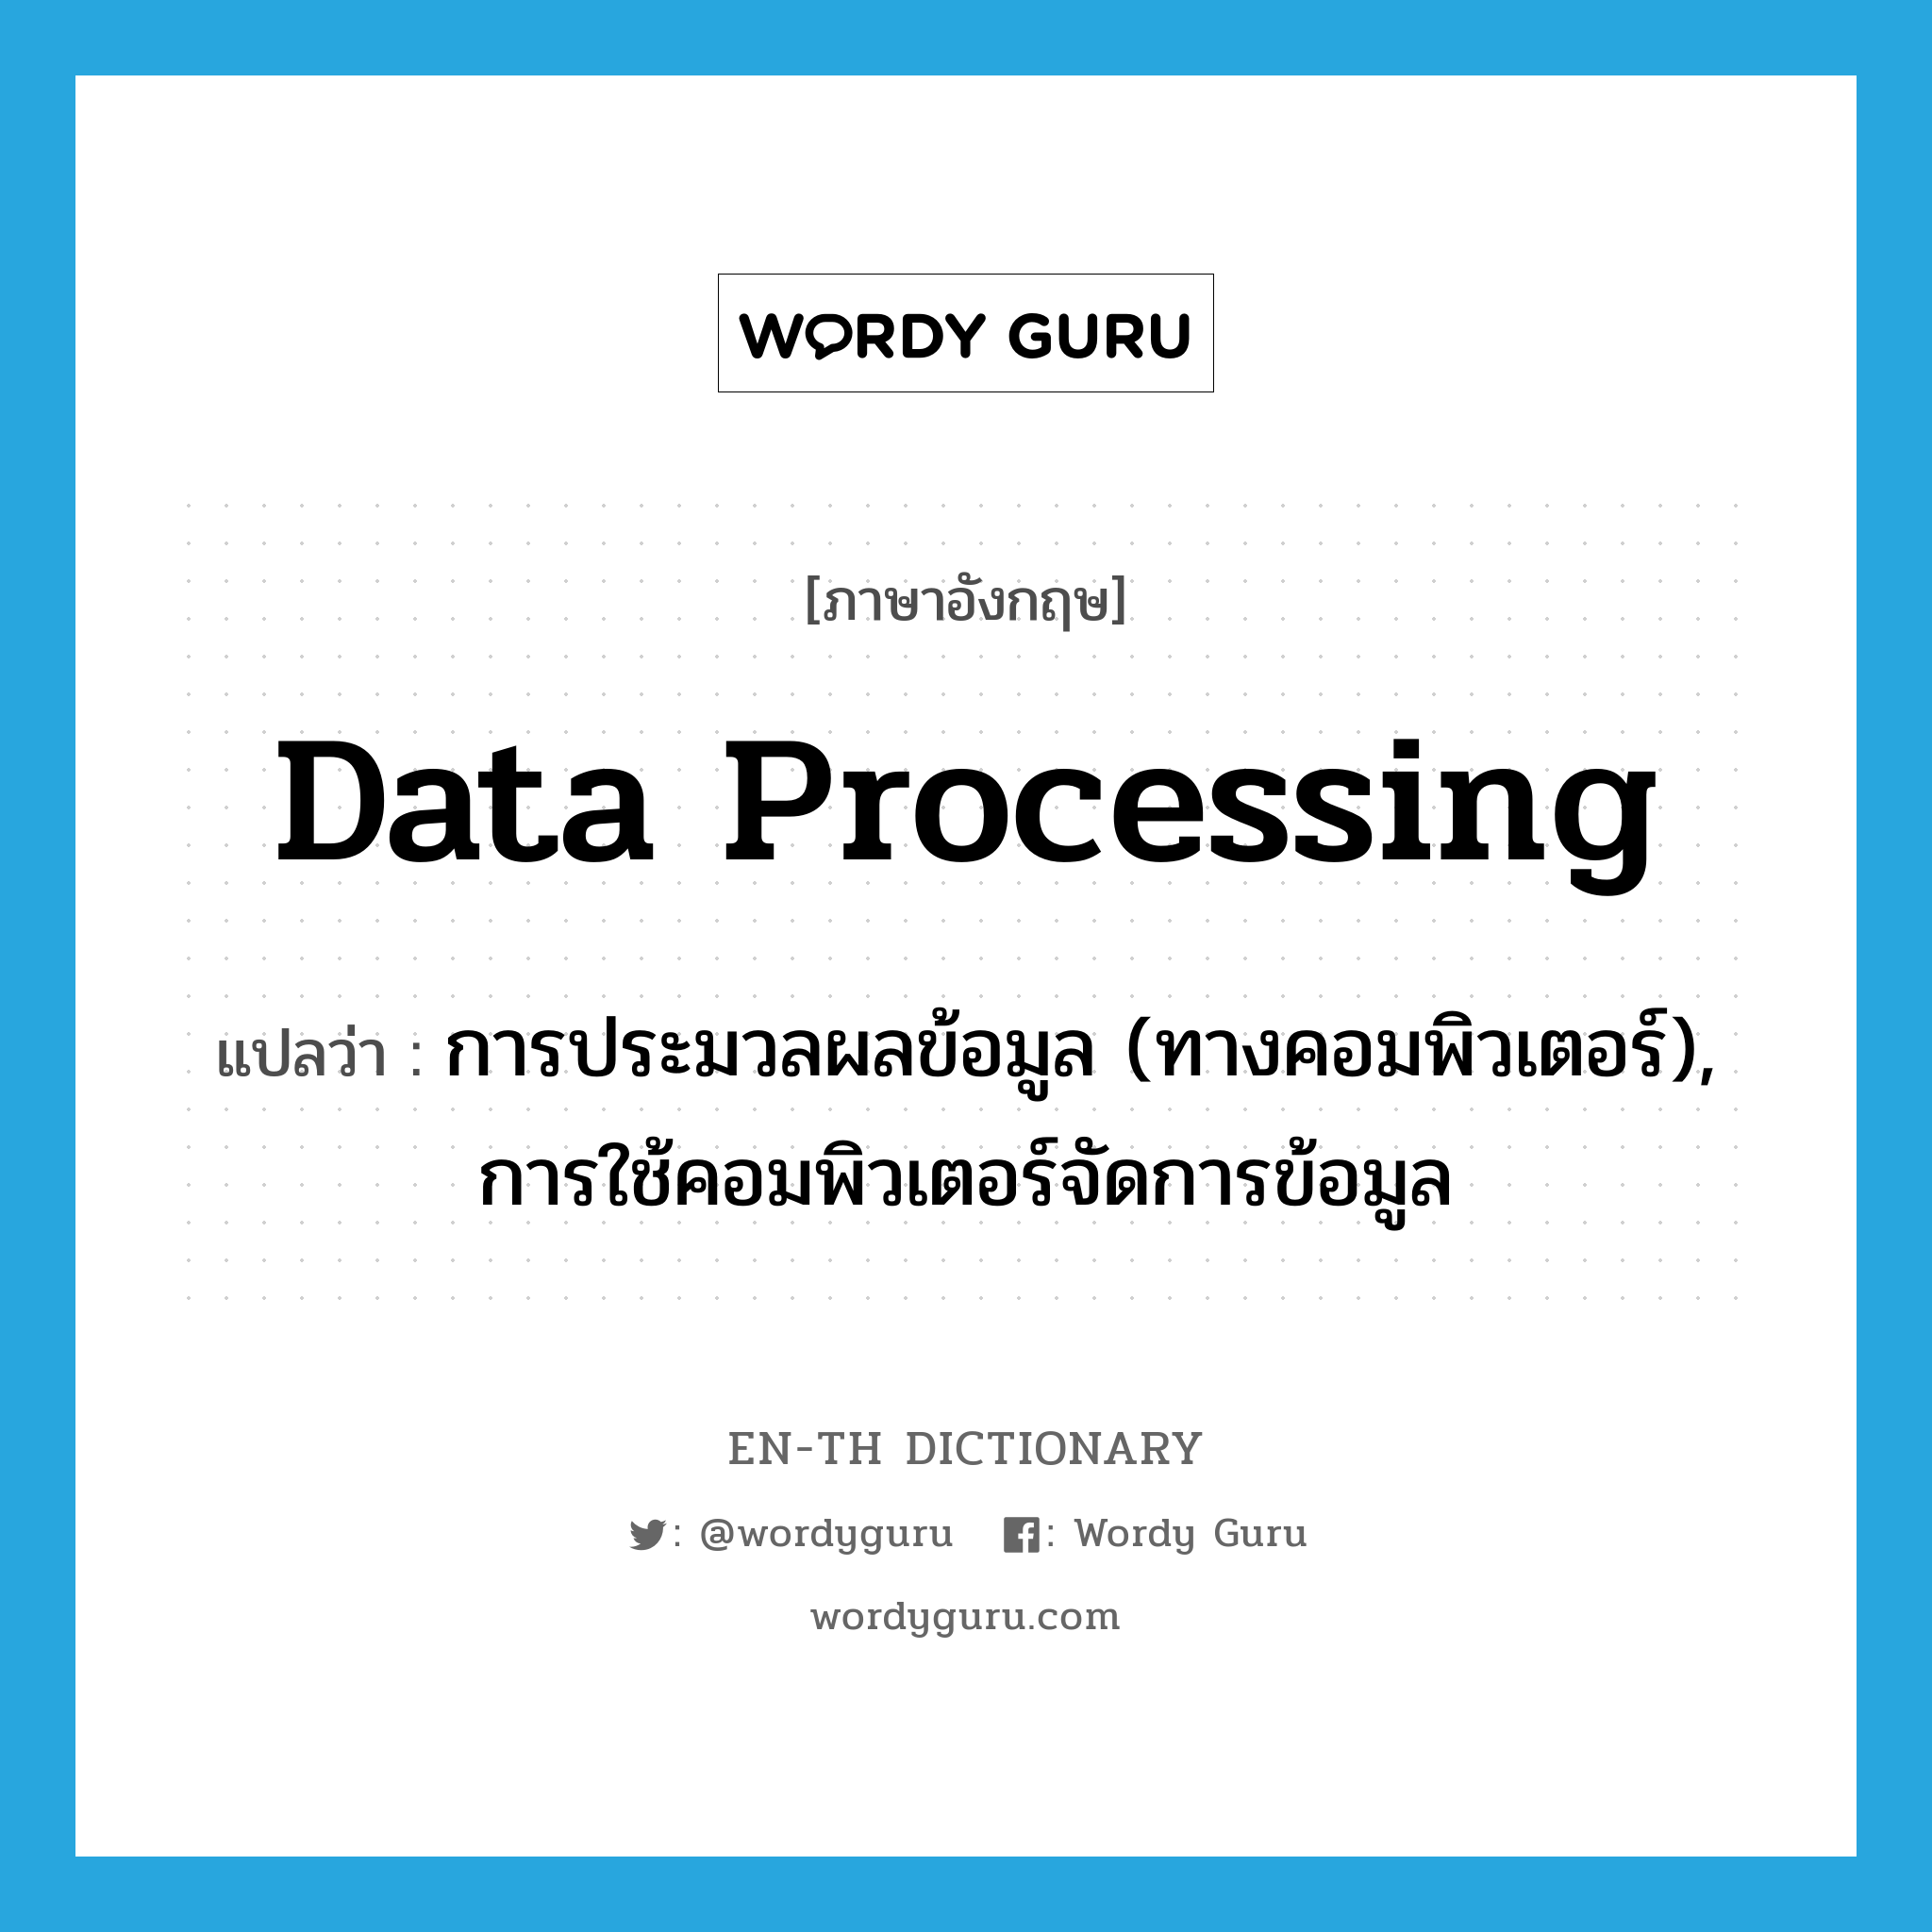 data processing แปลว่า?, คำศัพท์ภาษาอังกฤษ data processing แปลว่า การประมวลผลข้อมูล (ทางคอมพิวเตอร์), การใช้คอมพิวเตอร์จัดการข้อมูล ประเภท N หมวด N